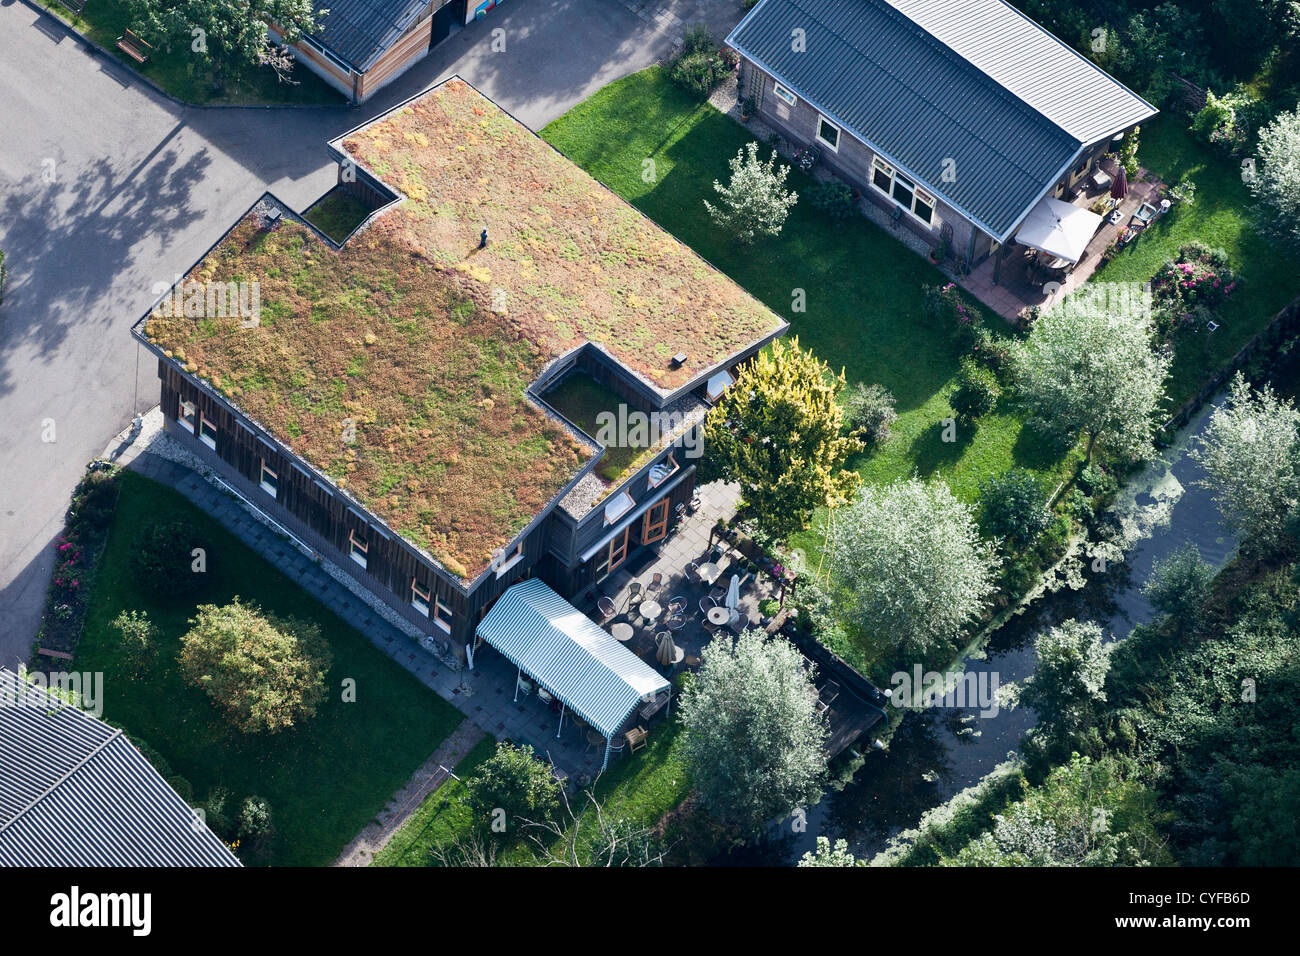 Les Pays-Bas, Haarzuilens. Chambre avec toit recouvert de végétation, probablement de sedum. Vue aérienne. Banque D'Images